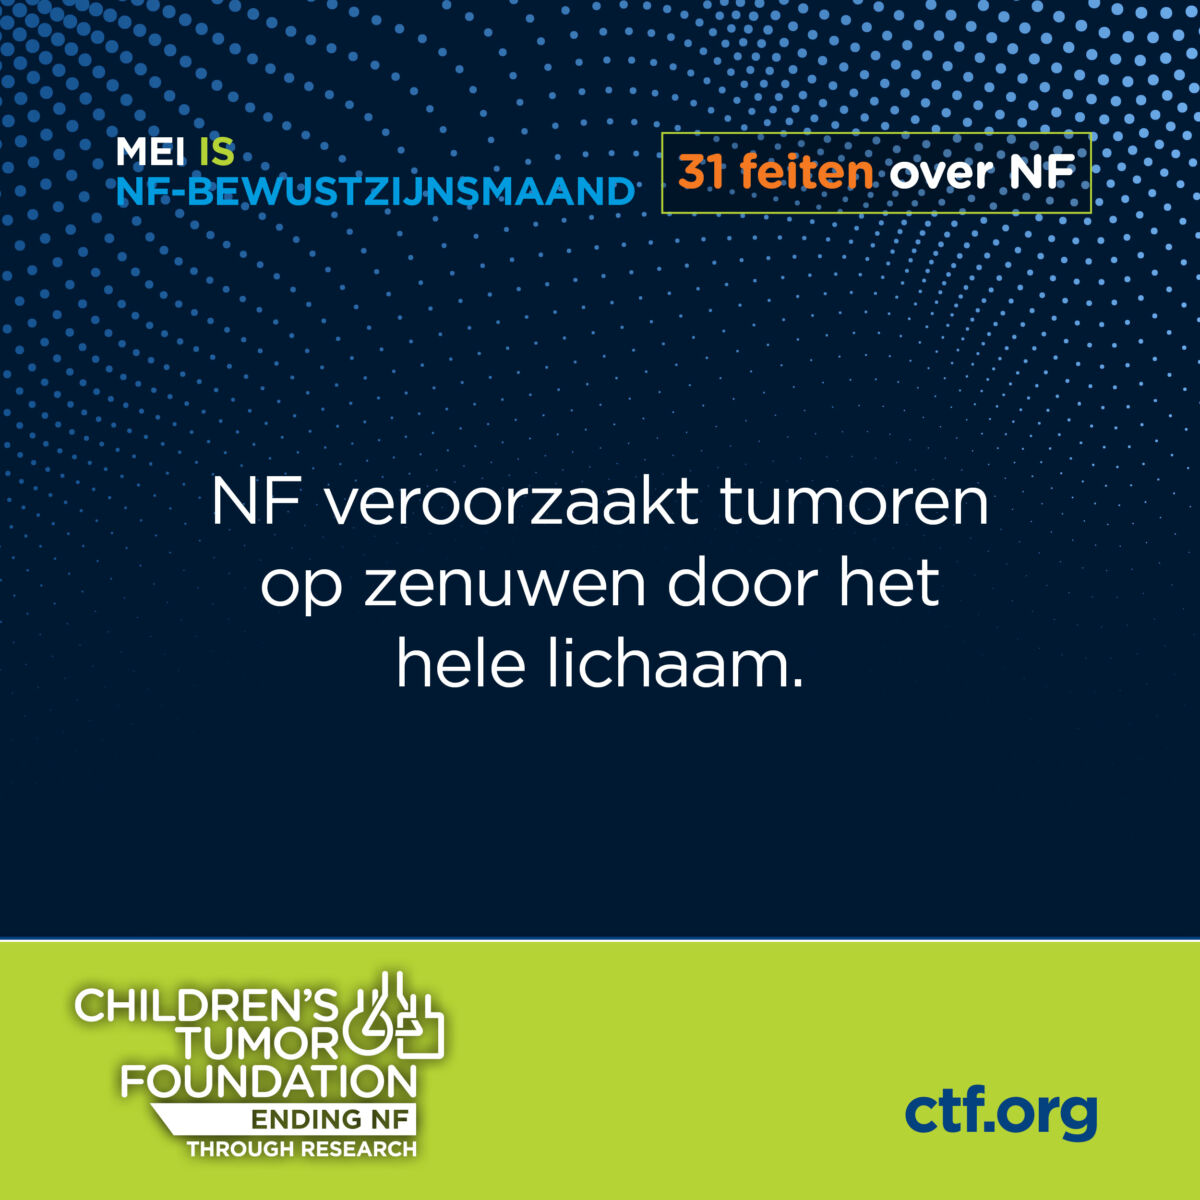 Informatief beeld met tekst over neurofibromatose, een aandoening die tumoren veroorzaakt op zenuwen, met verwijzing naar de children's tumor foundation.